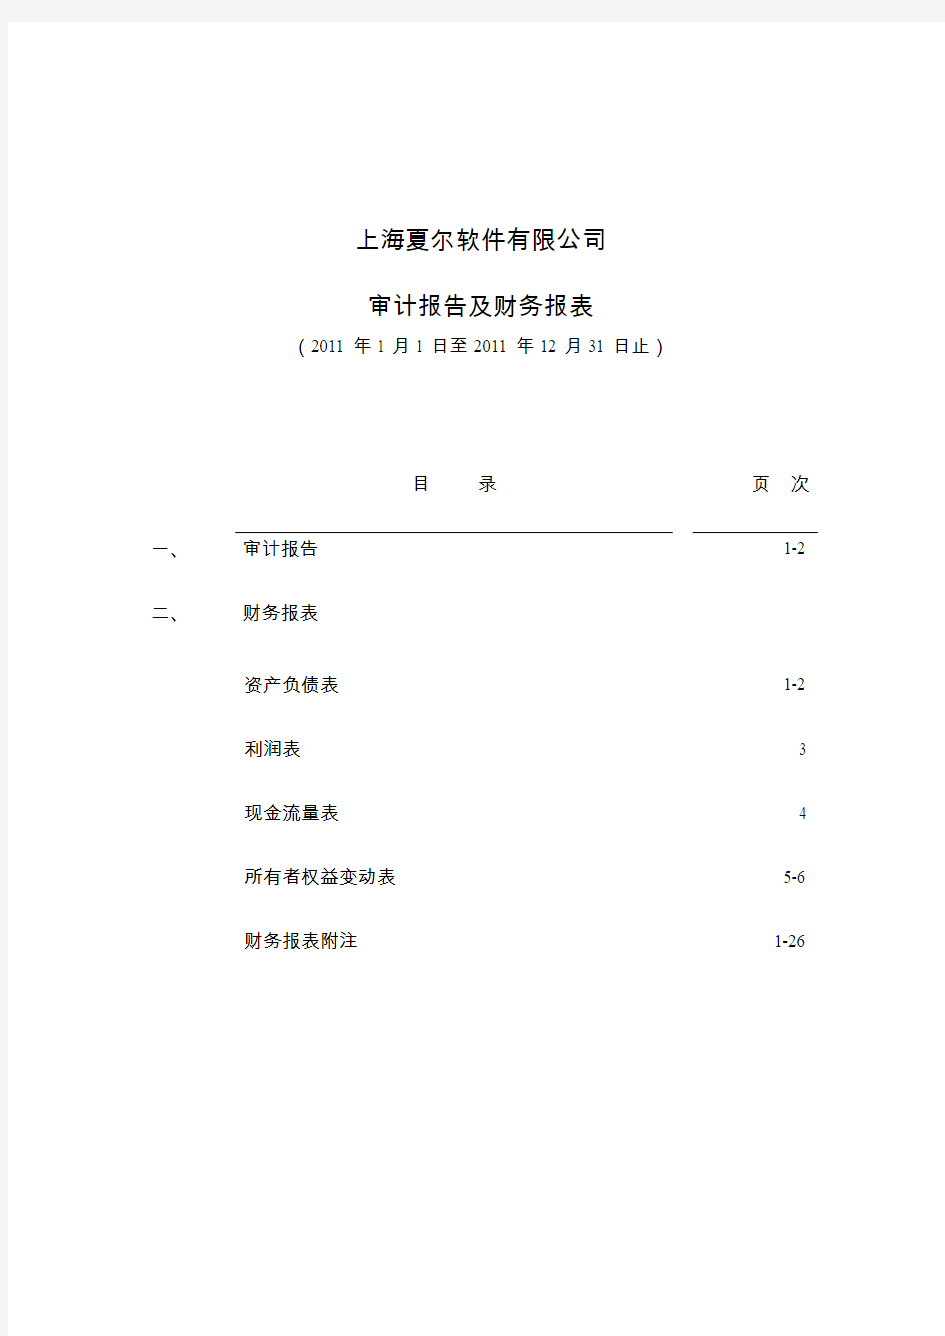 汉得信息：上海夏尔软件有限公司2011年度审计报告及财务报表